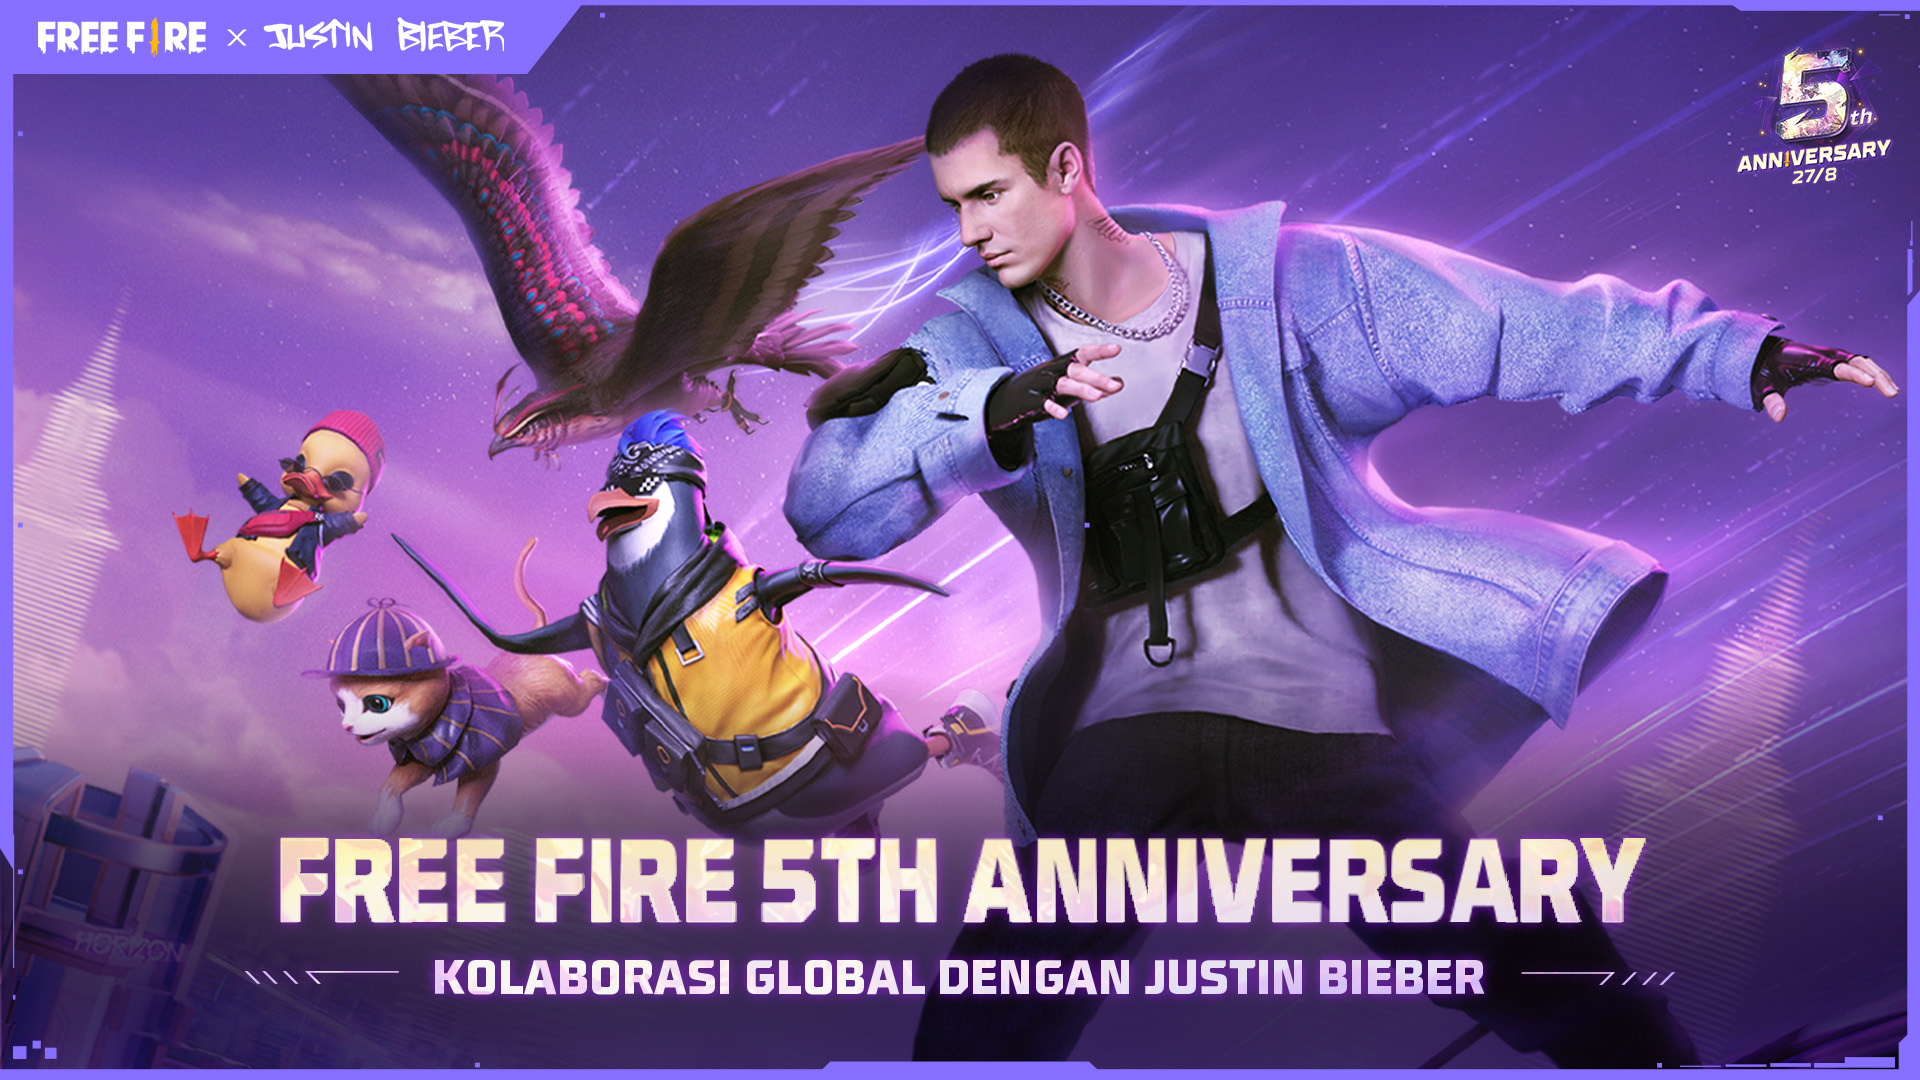 Justin Bieber Jadi Ikon Global Garena Free Fire